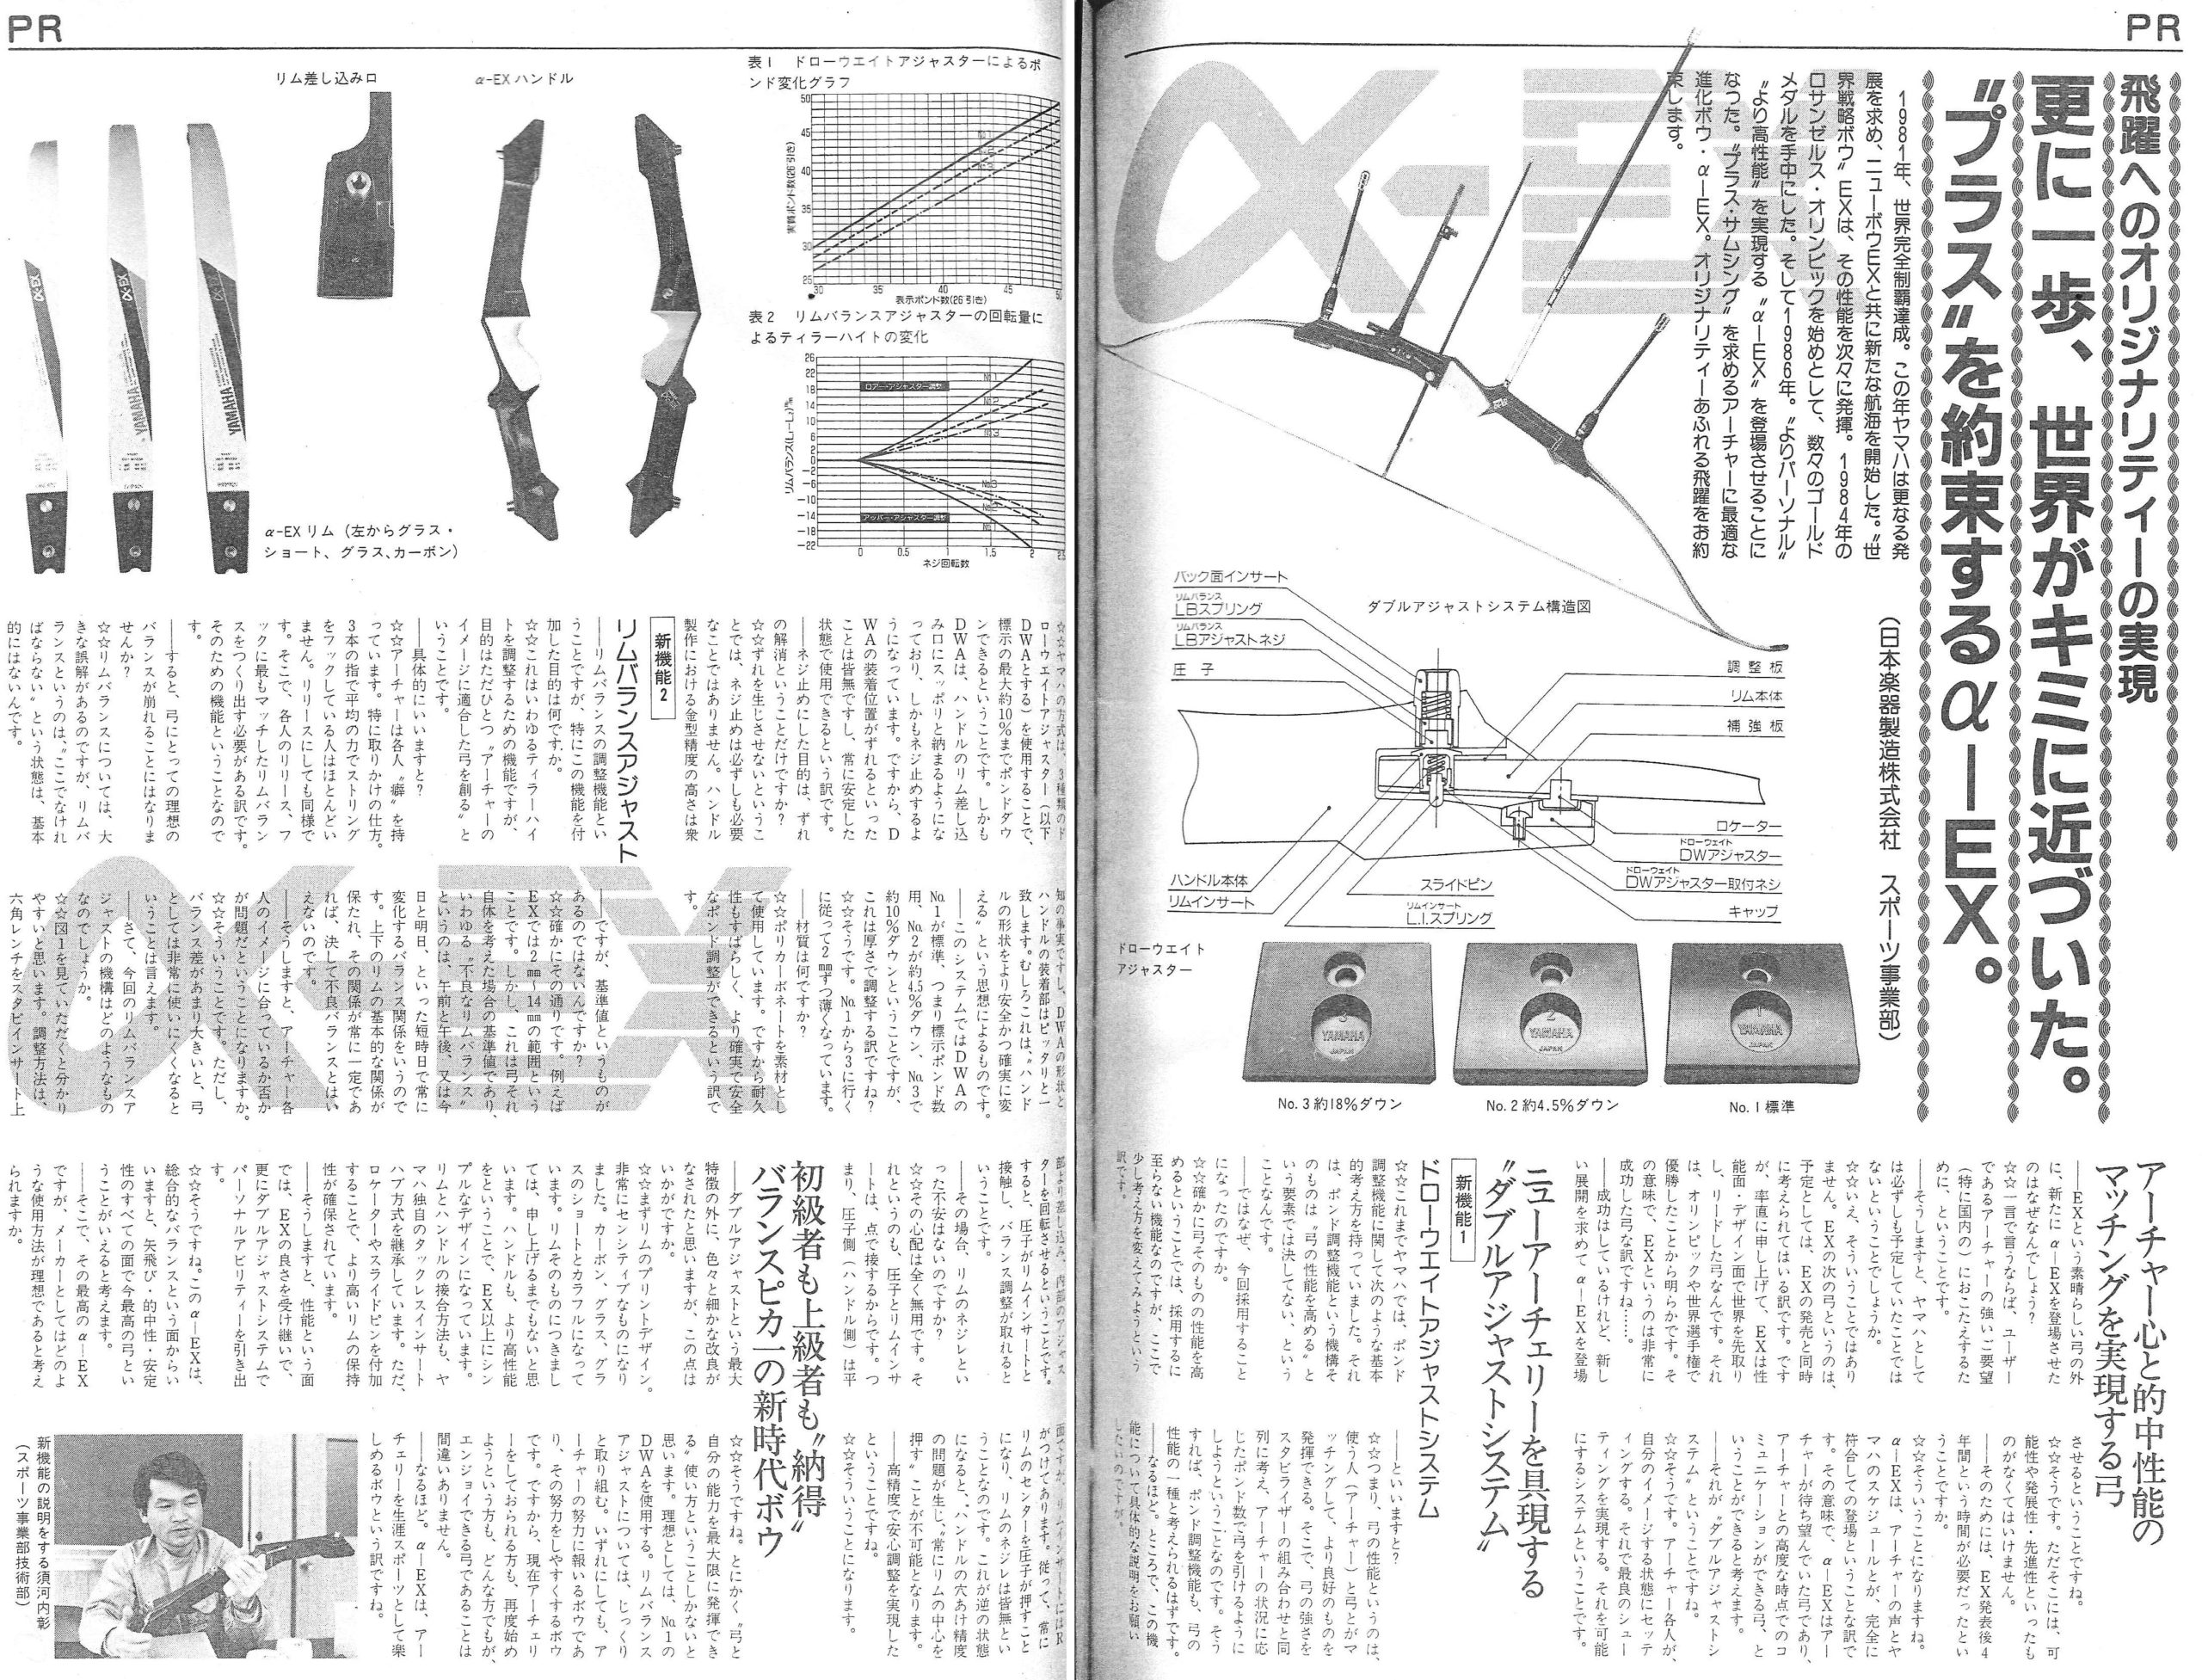 YAMAHA(ヤマハ)の弓具と機能一覧 | アーチャーレポート | アーチェリー 